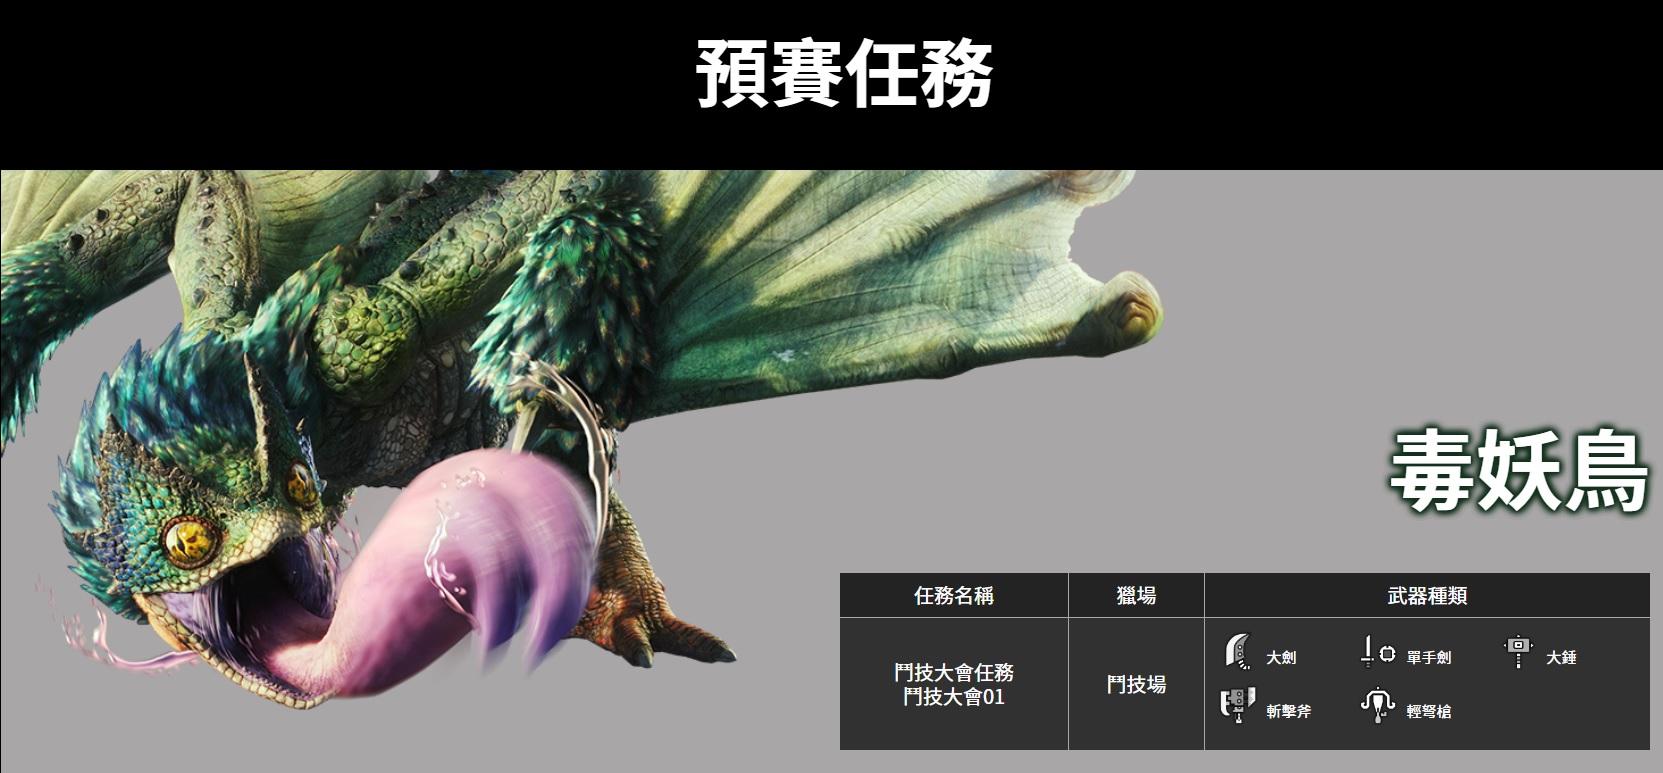 狩獵王大賽香港站 魔物獵人世界 香港官方比賽開放報名 香港手機遊戲網gameapps Hk